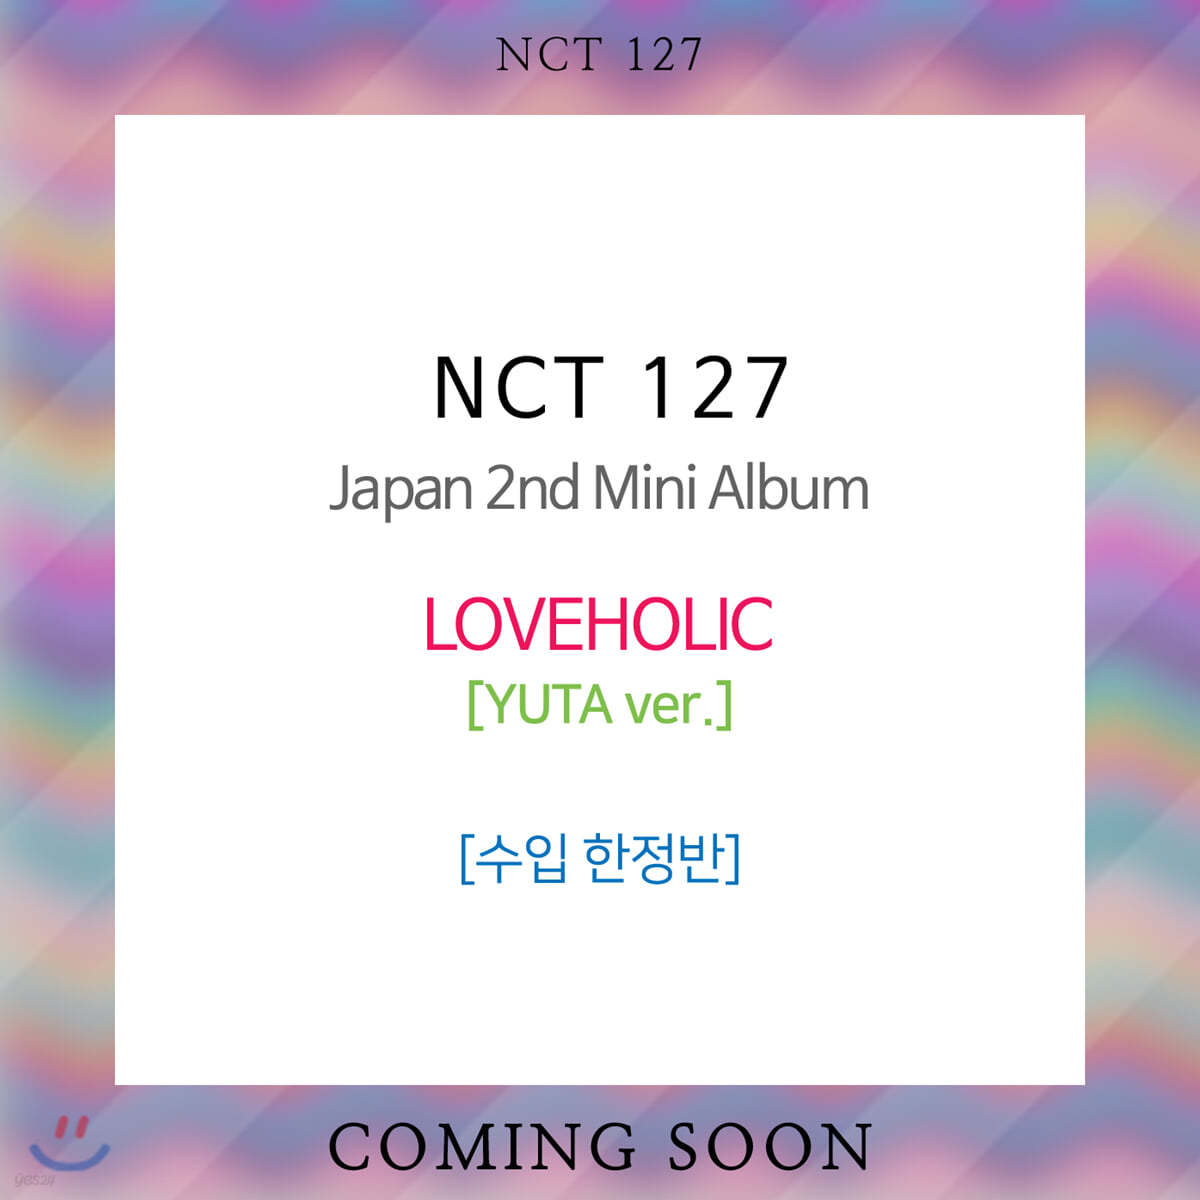 엔시티 127 (NCT 127) - Japan 2nd Mini Album : LOVEHOLIC [한정반] [YUTA ver.]